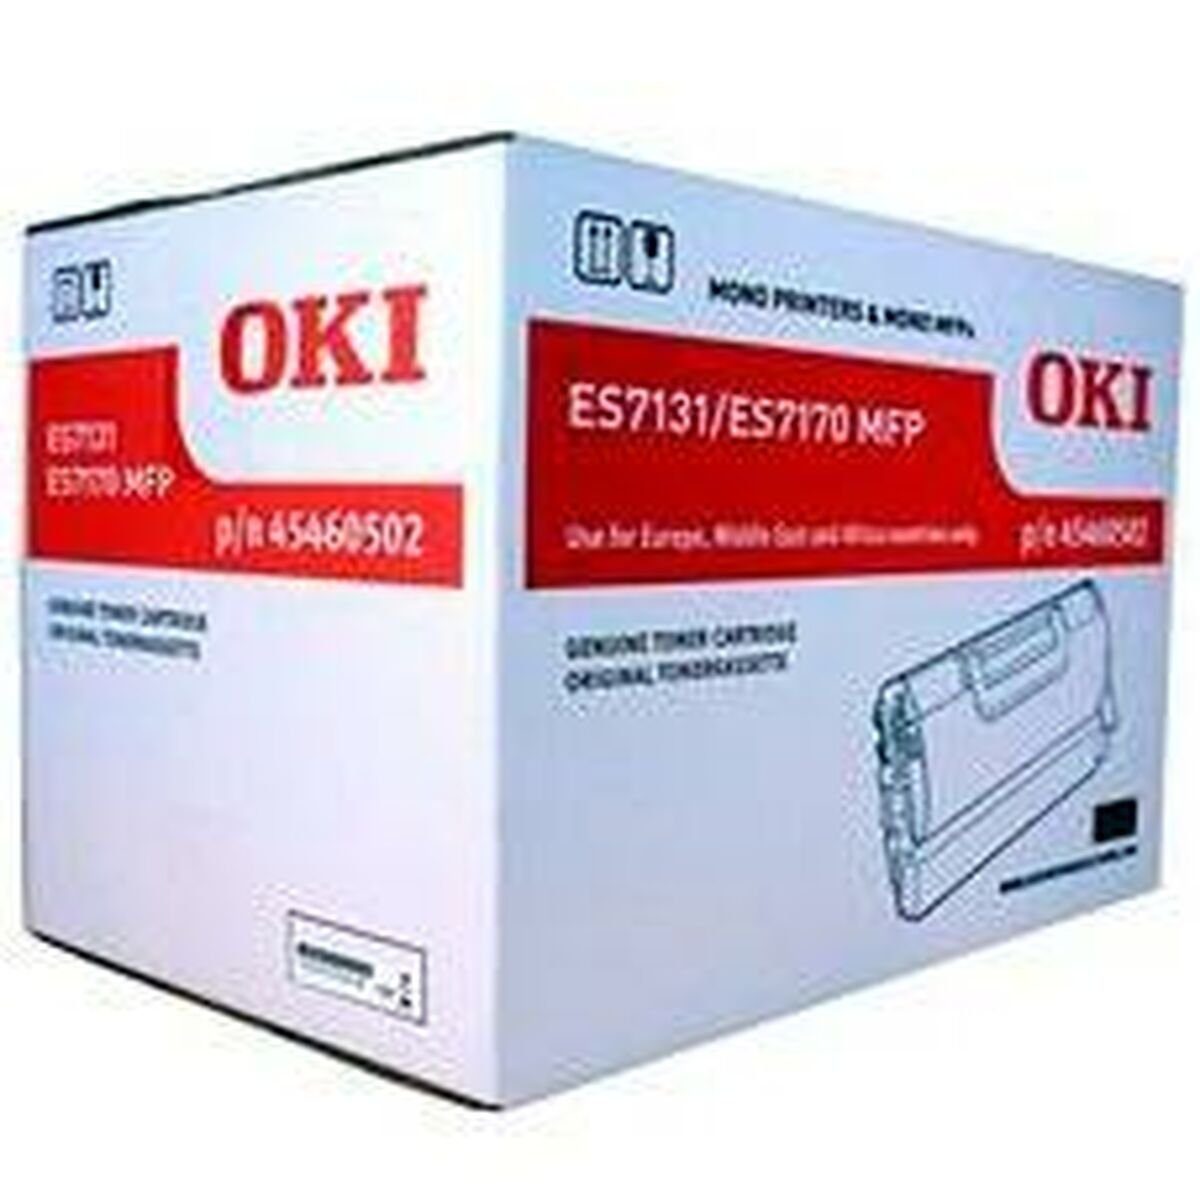 Schwarz OKI Toner Tintenpatrone Laserdrucker 45460502 OKI